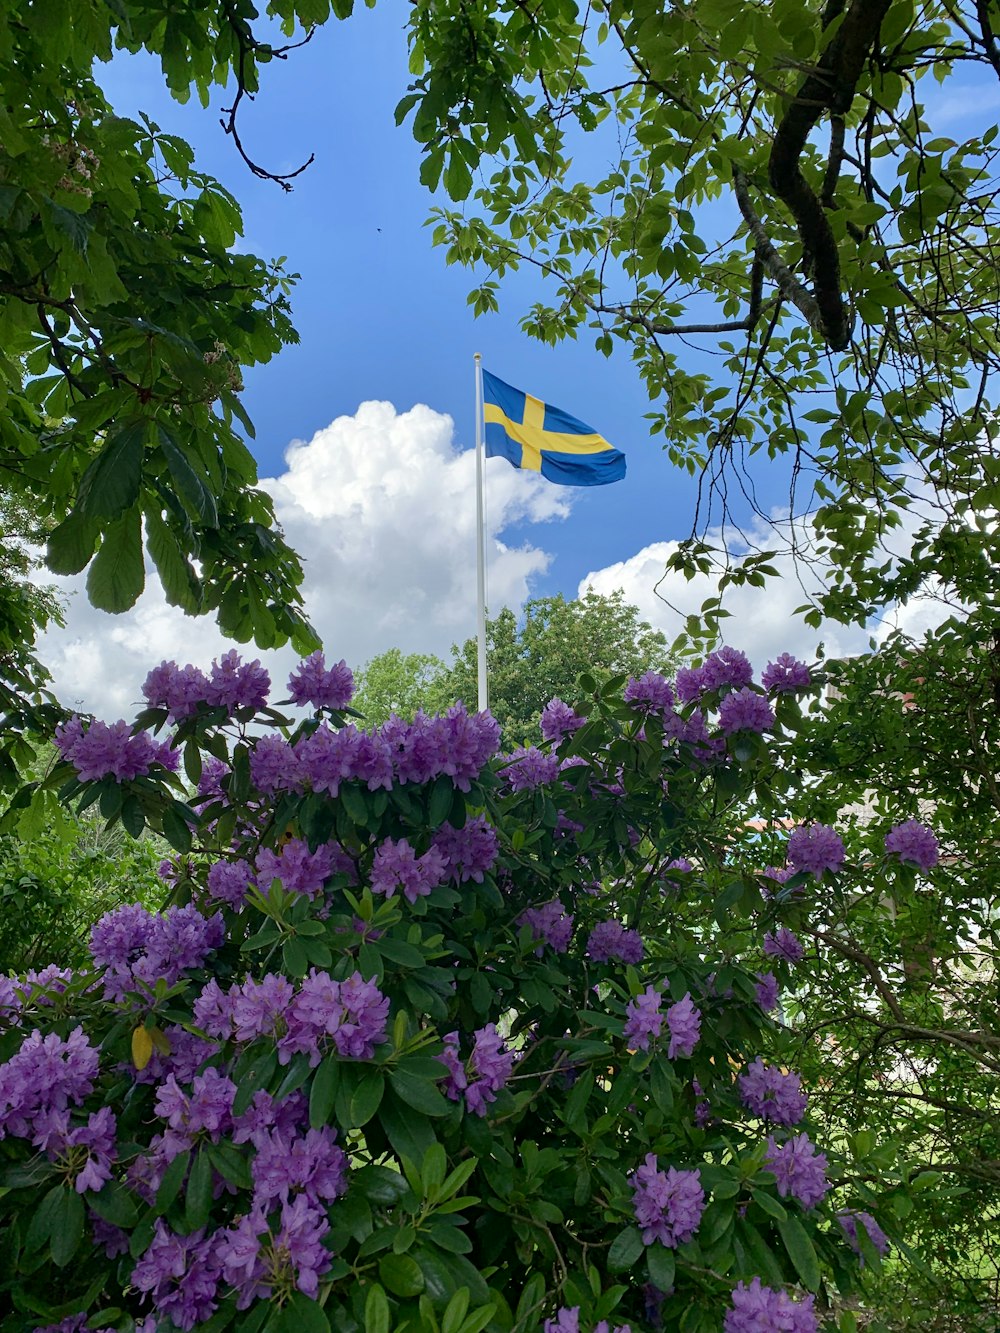 Bandera azul con cruz amarilla en el medio cerca de arbustos de flores púrpuras